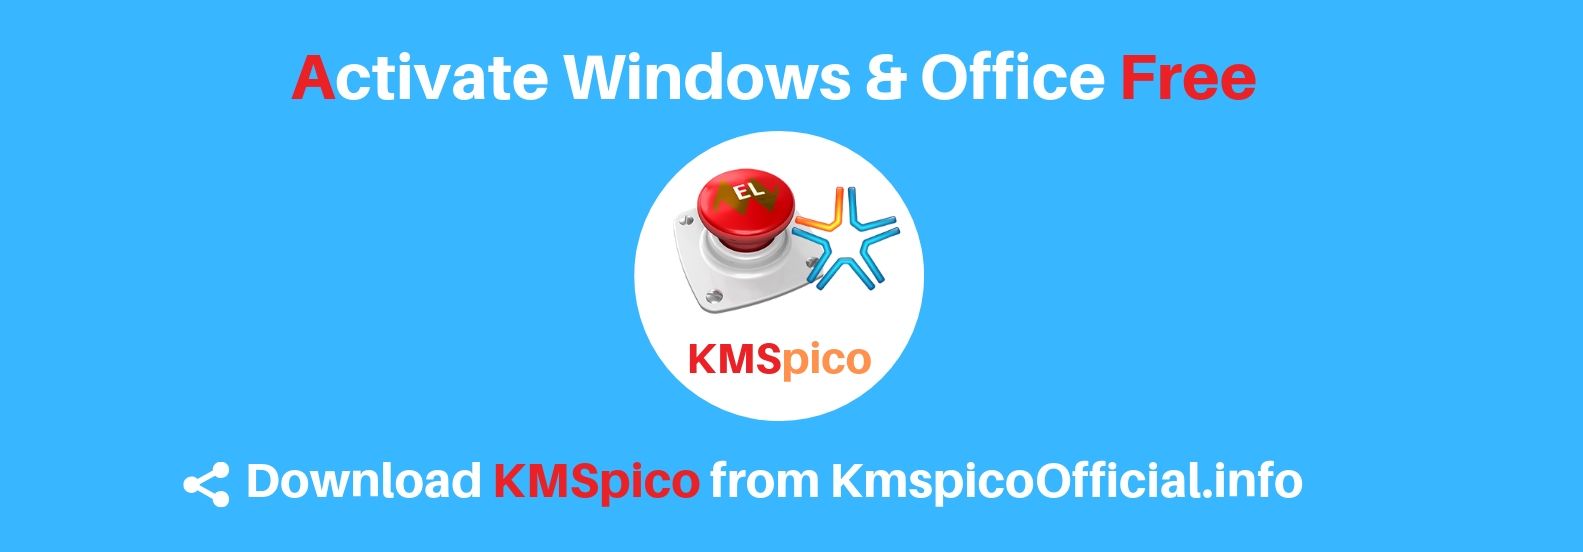 Download kmspico windows 10 activator